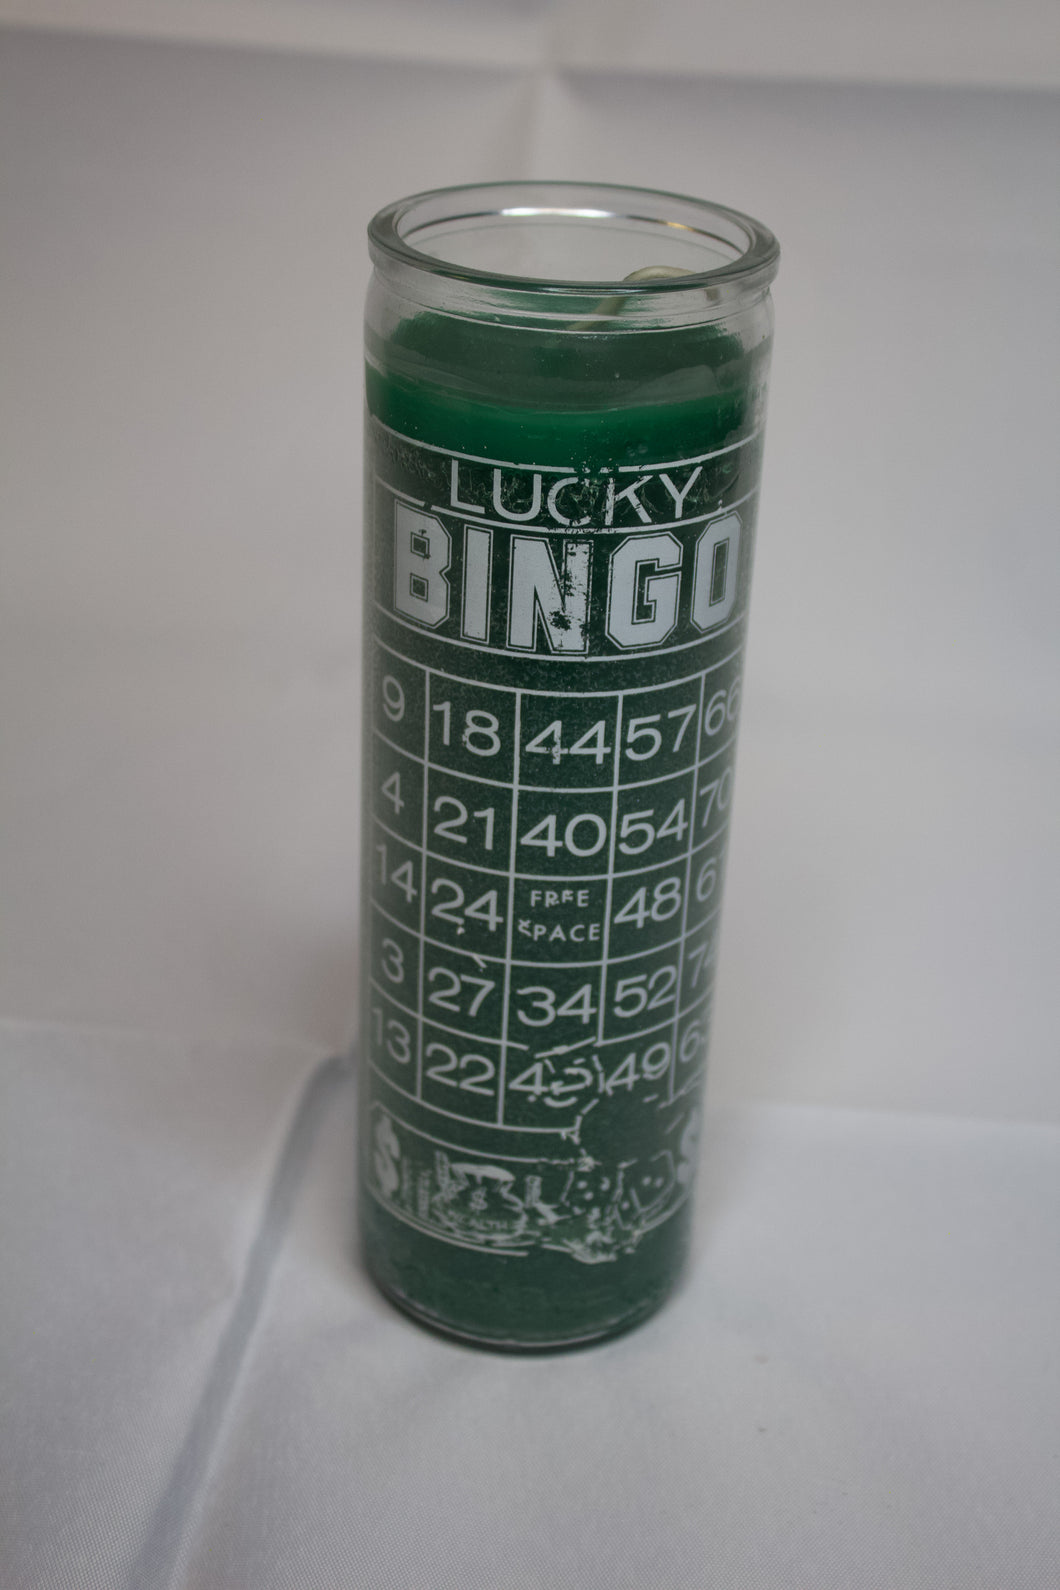 Lucky Bingo (Lottery)